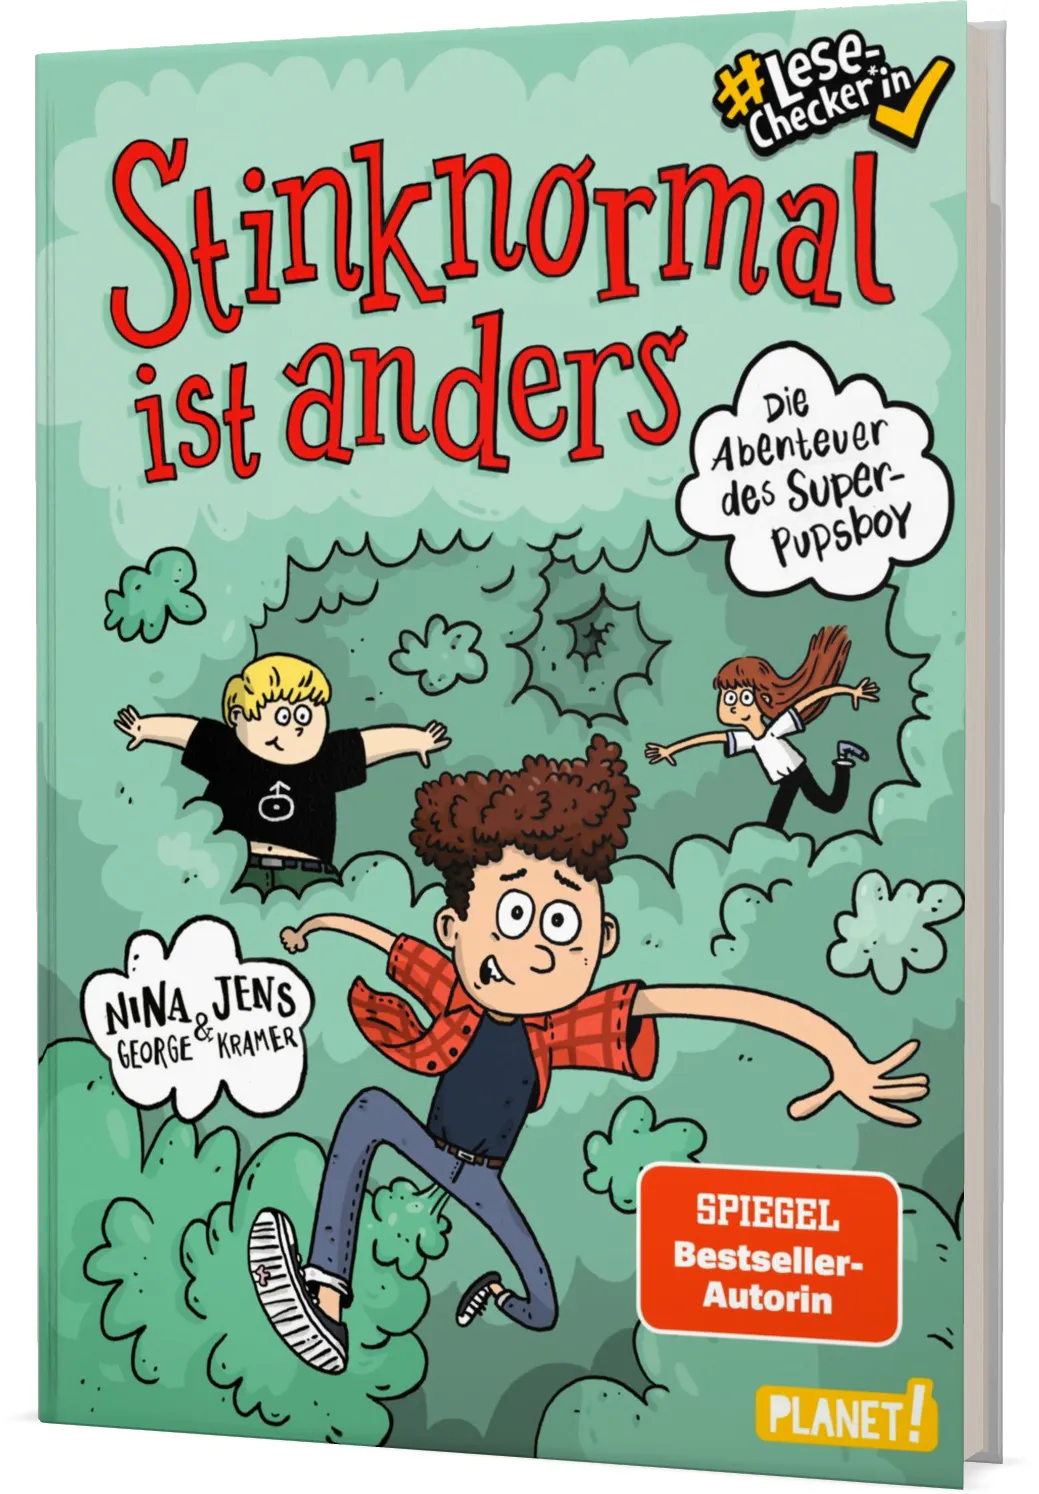 Cover von "Stinknormal ist anders - die Abenteuer des Super-Pupsboy" aus dem Planet Verlag.